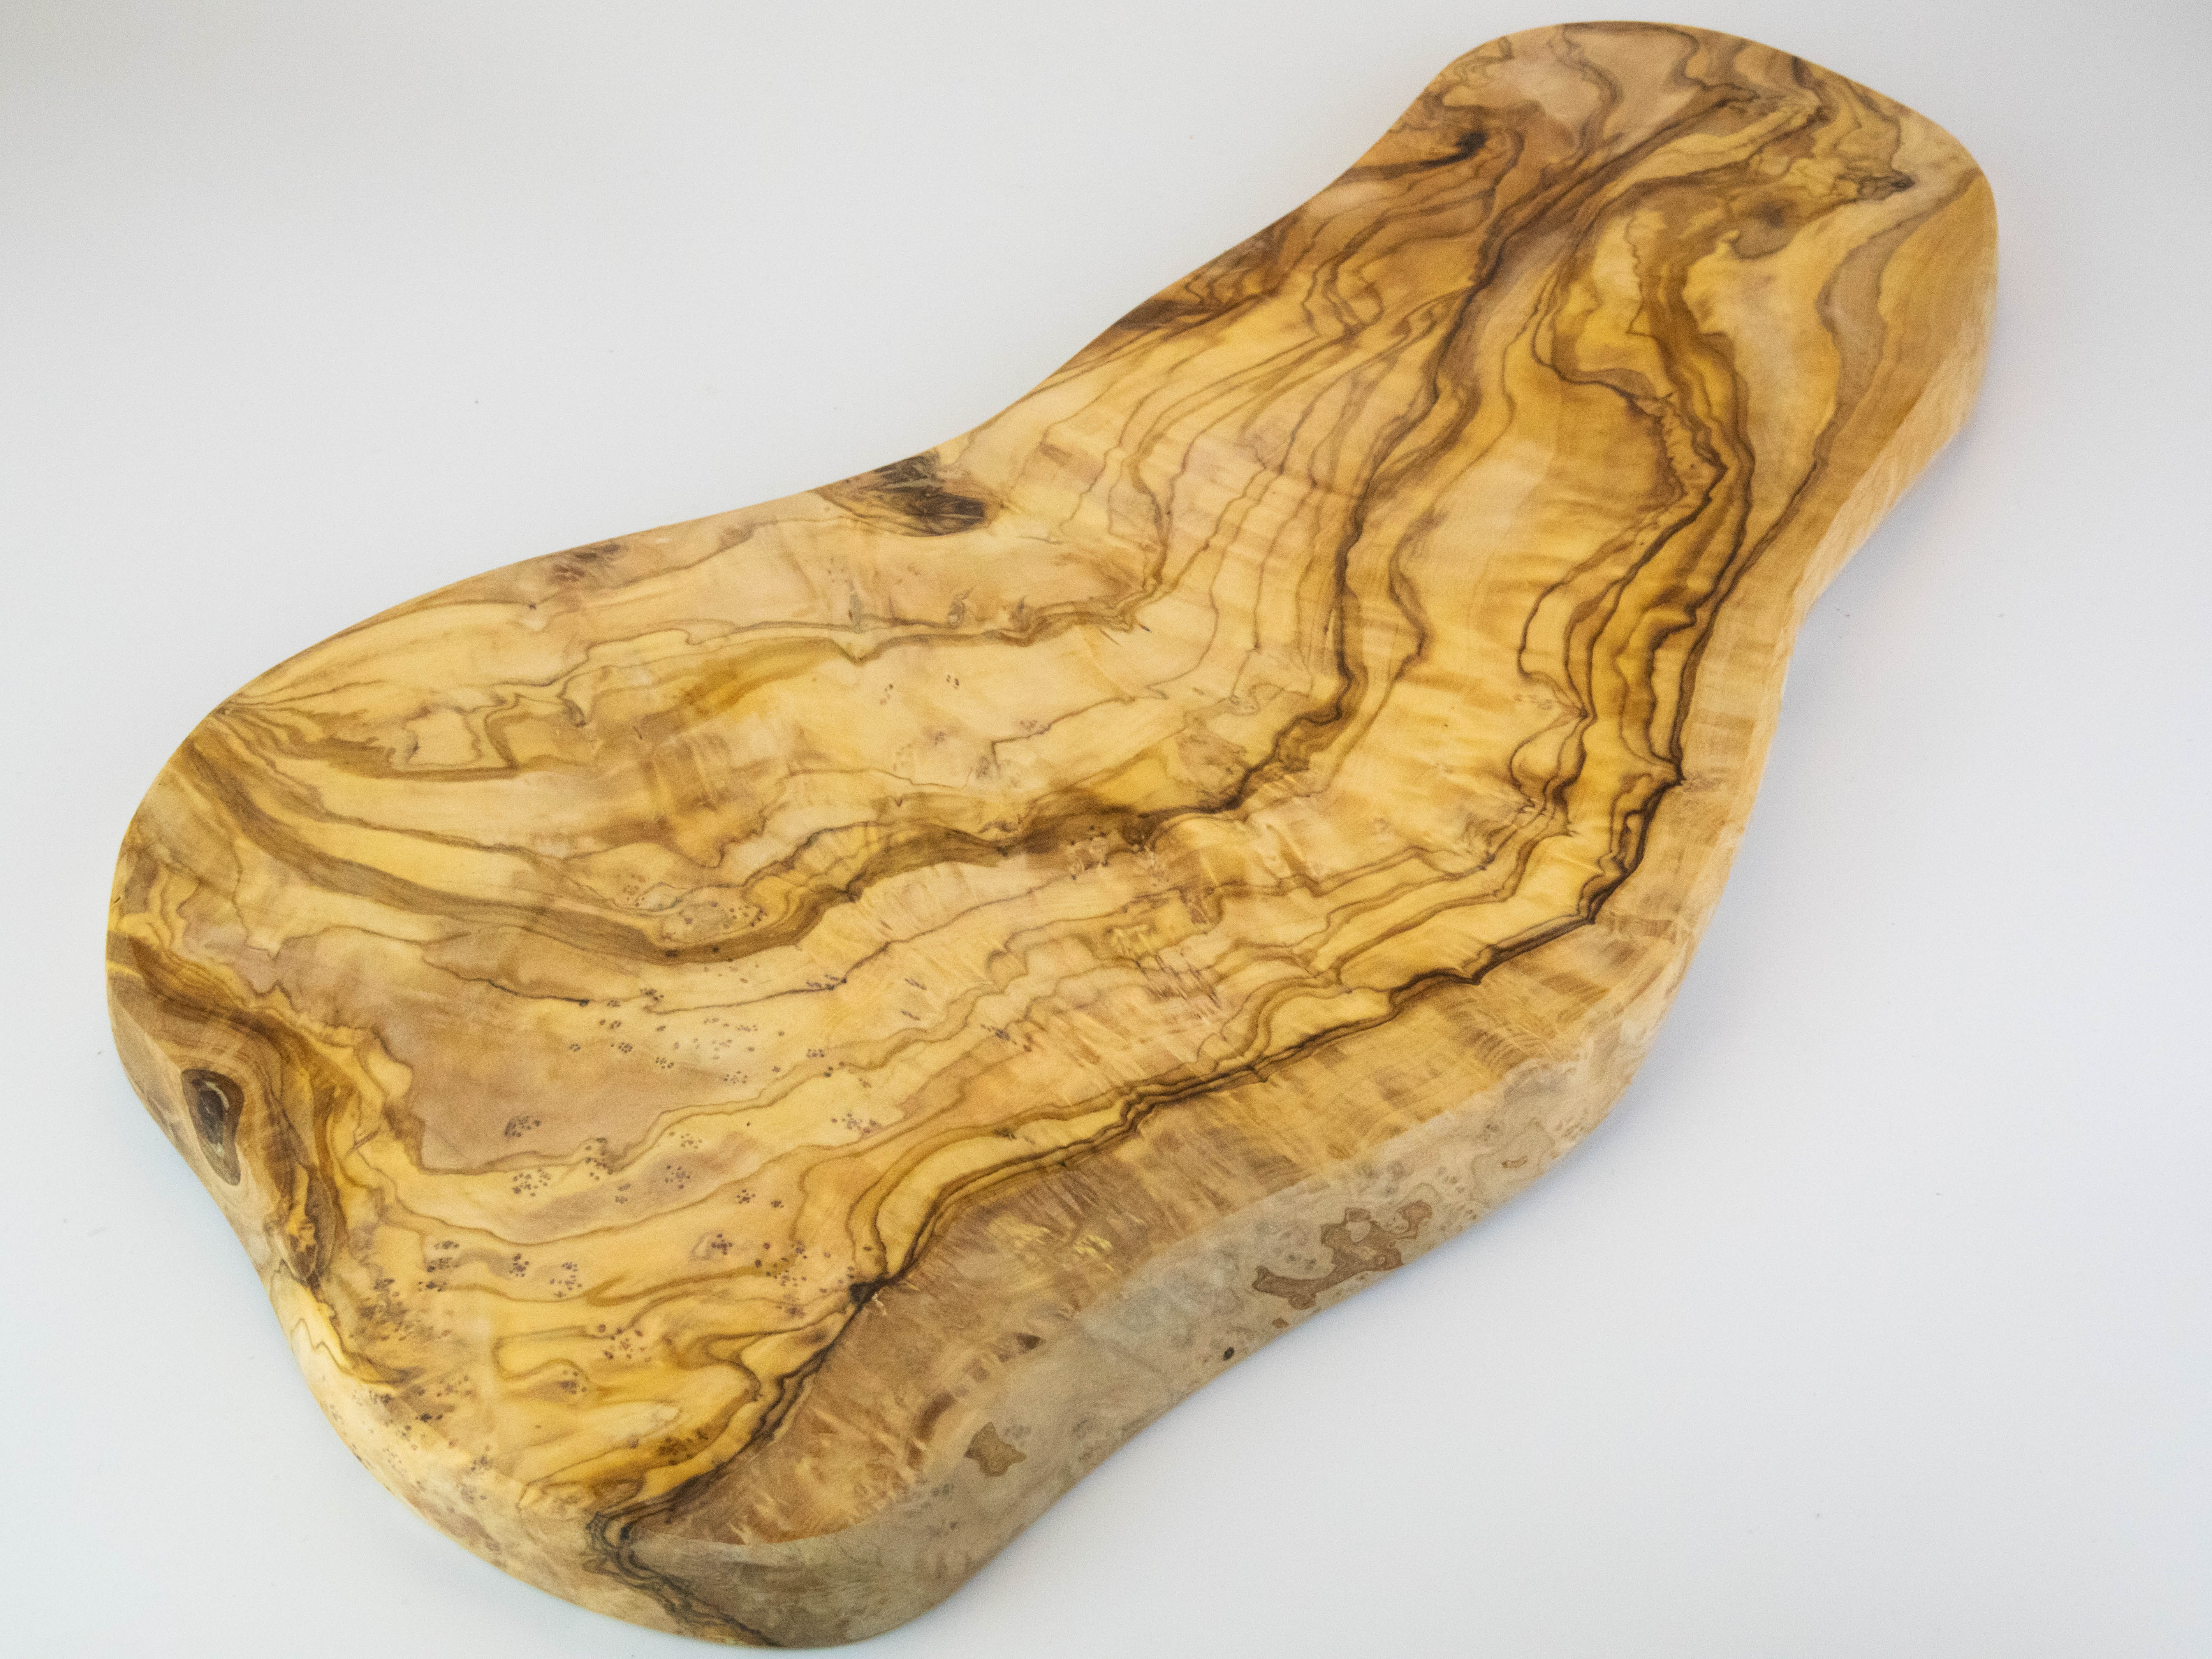 Tabla de cortar grande y rústica de madera de olivo con una longitud de 55-60 cm.